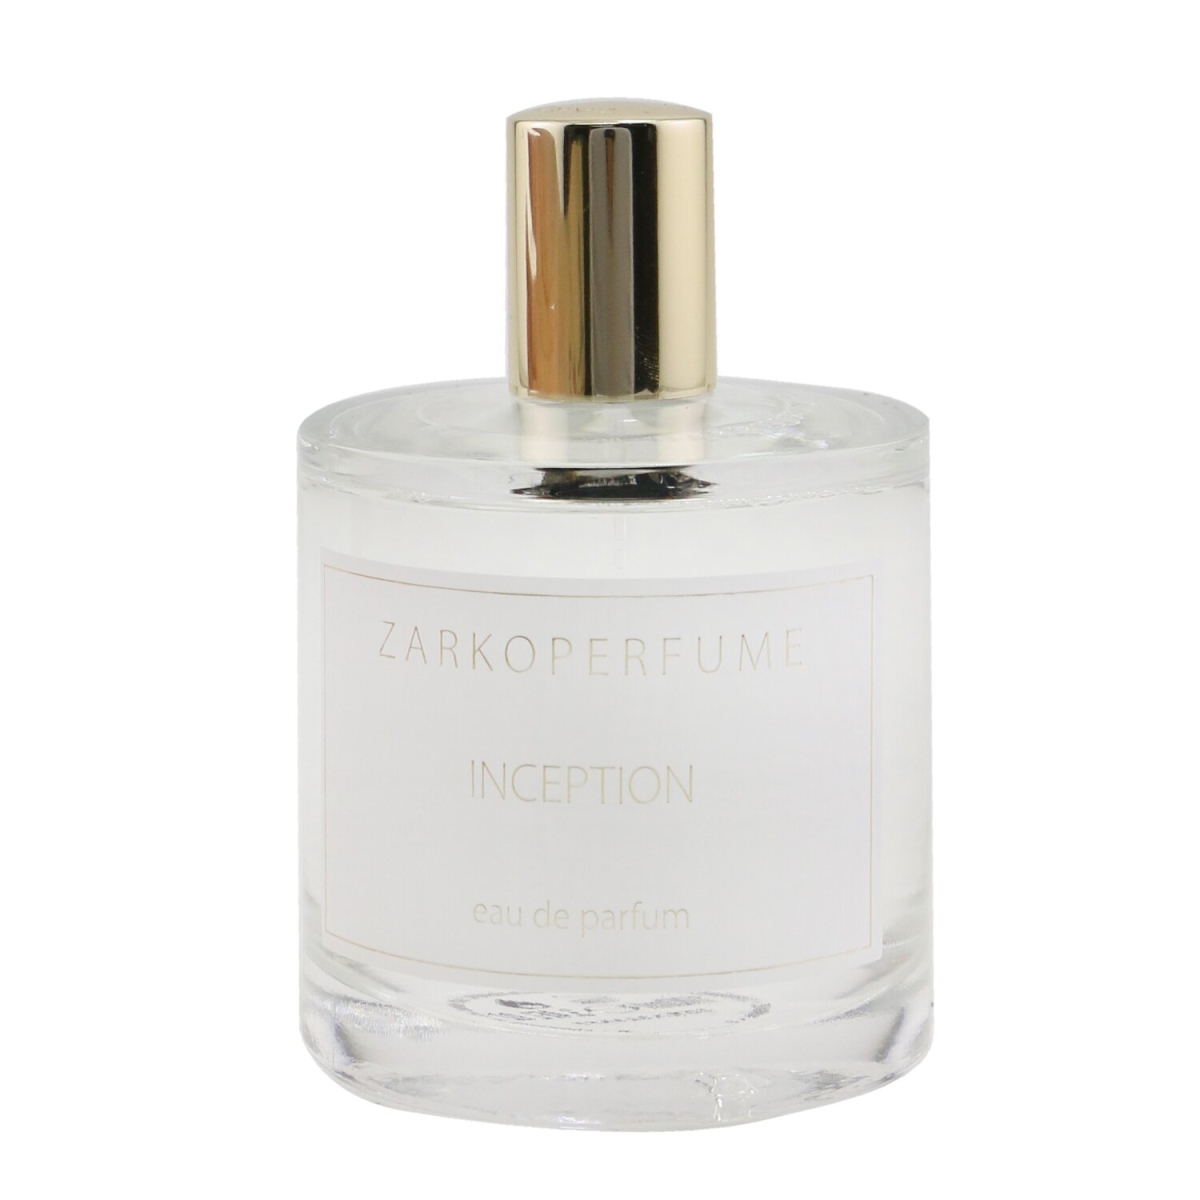 Picture of Zarkoperfume 262194 3.4 oz Inception Eau De Parfum Spray for Women